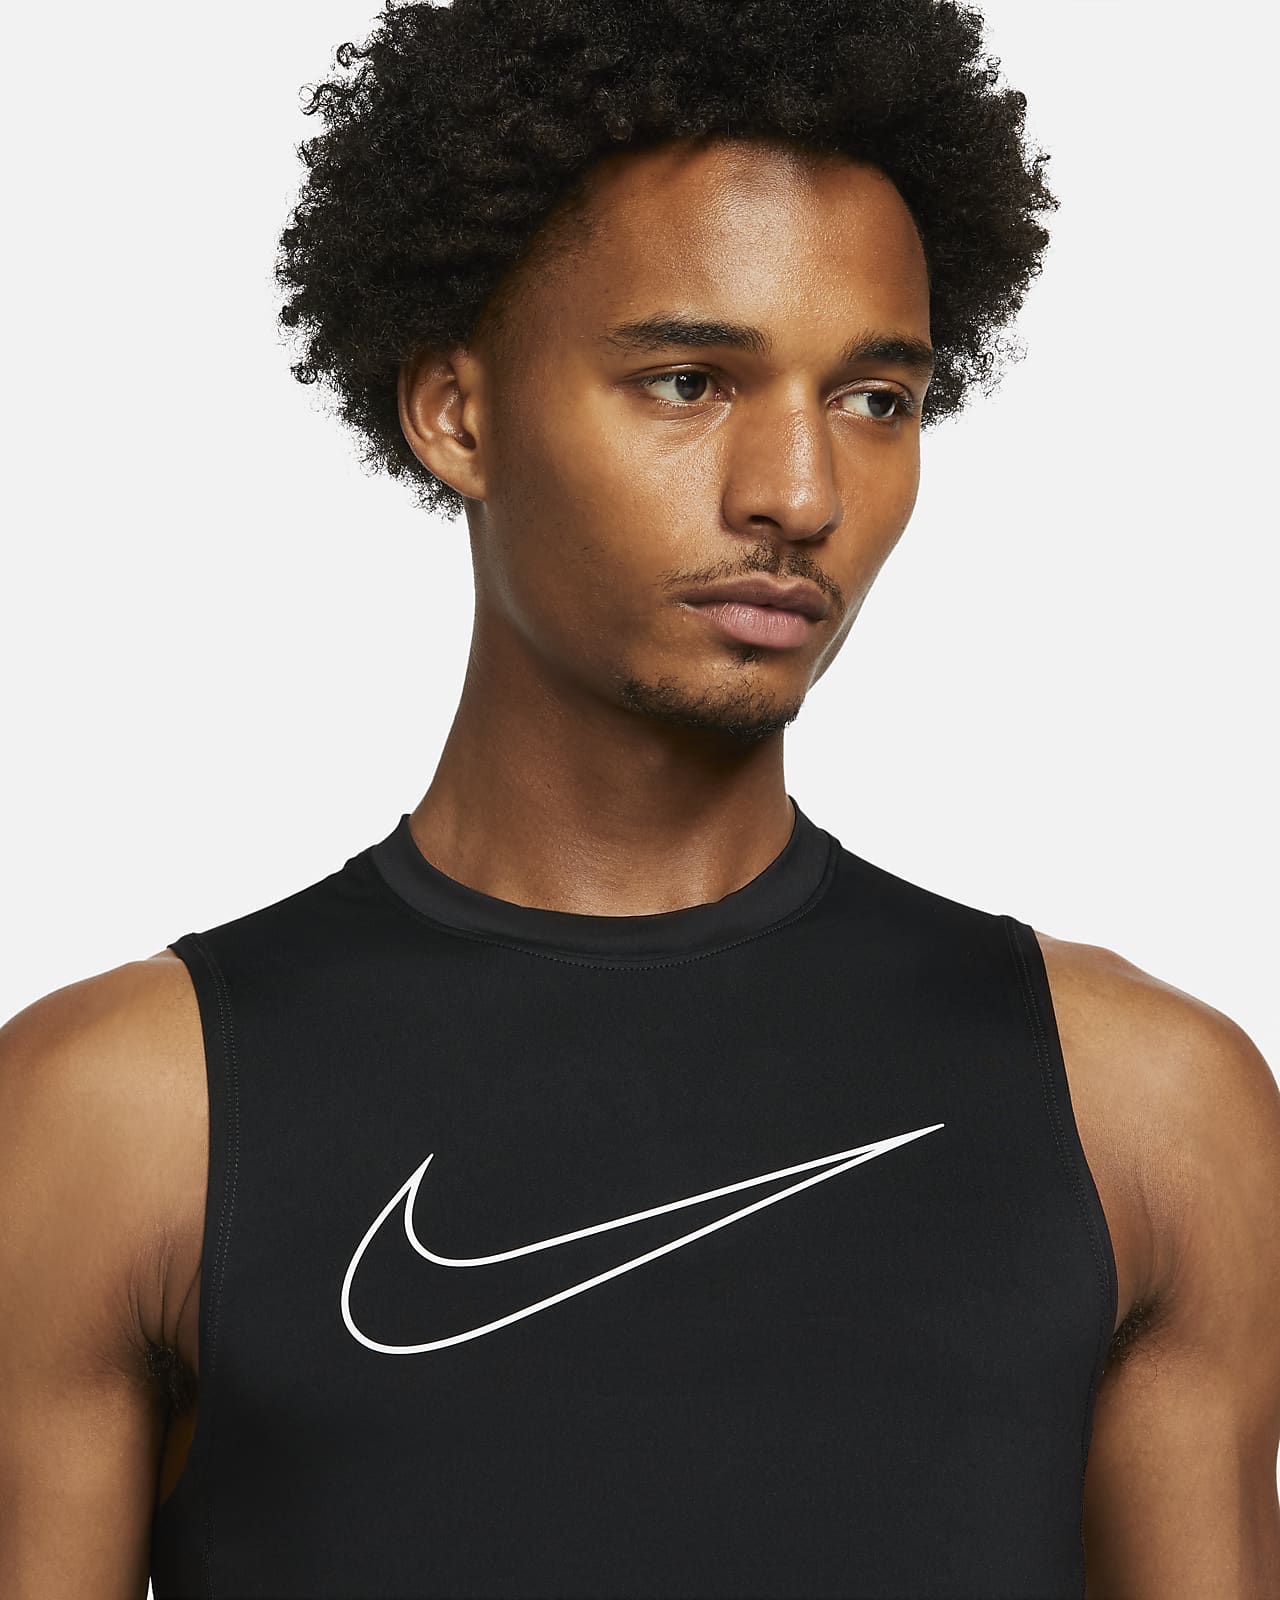 Camiseta sin mangas y ajustado para Nike Pro Nike.com